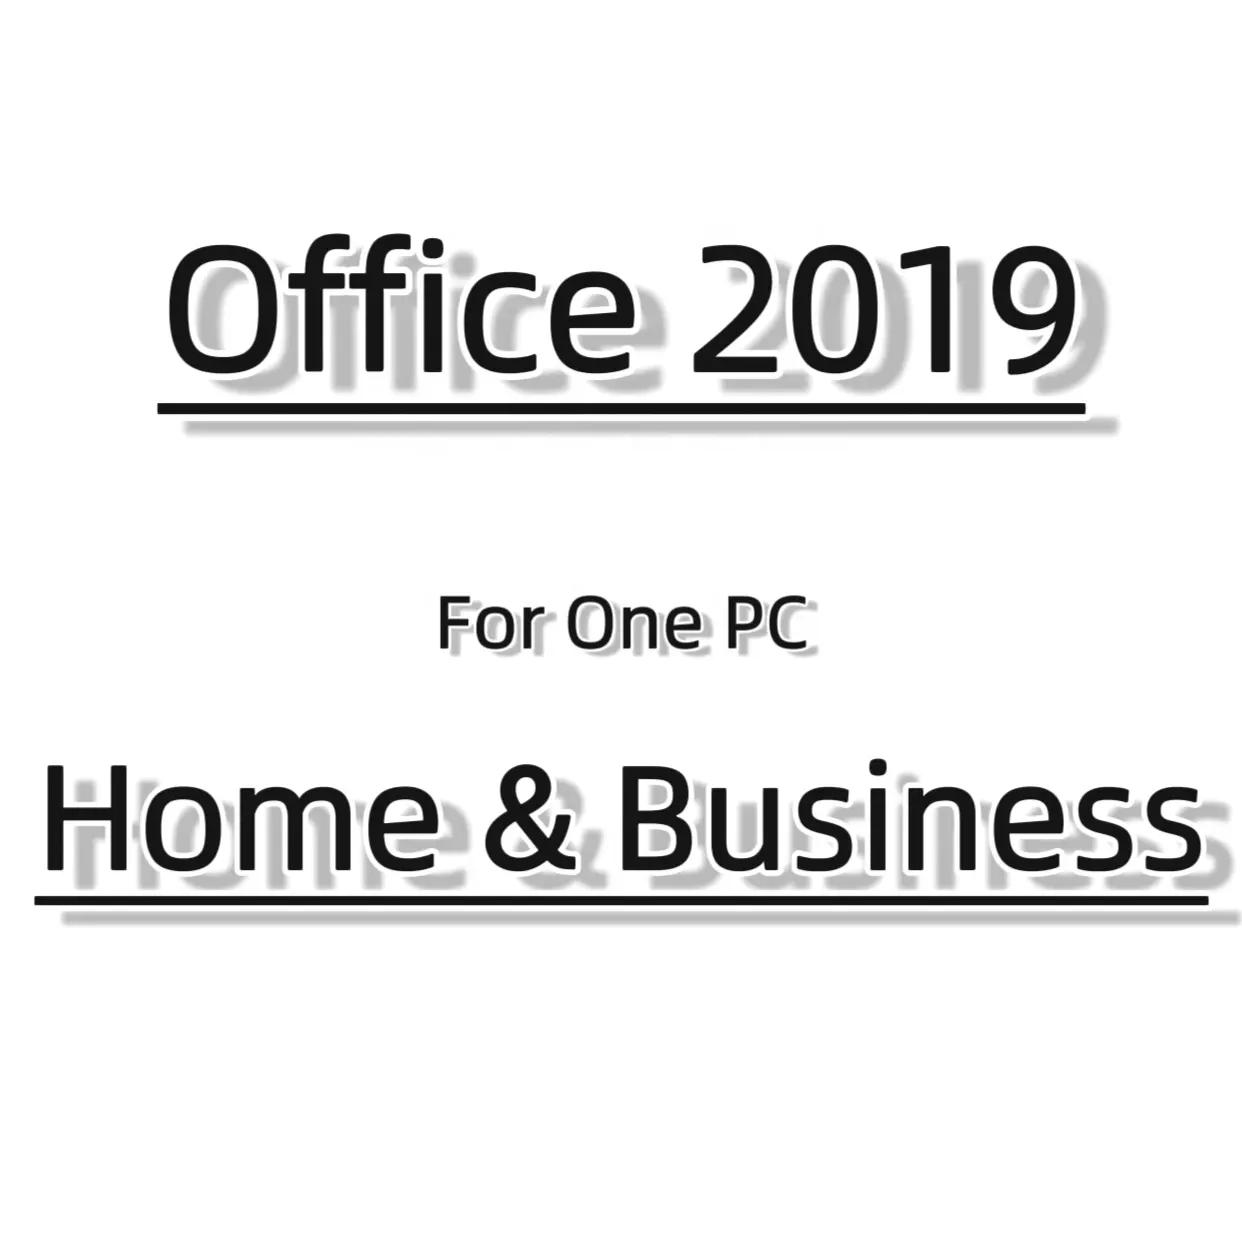 برنامج MS Office 2019 للمنزل والعمل للكمبيوتر الشخصي 32/64Bit، برنامج Office 2019HB مفتاح ترخيص نشاط عبر الإنترنت 100%